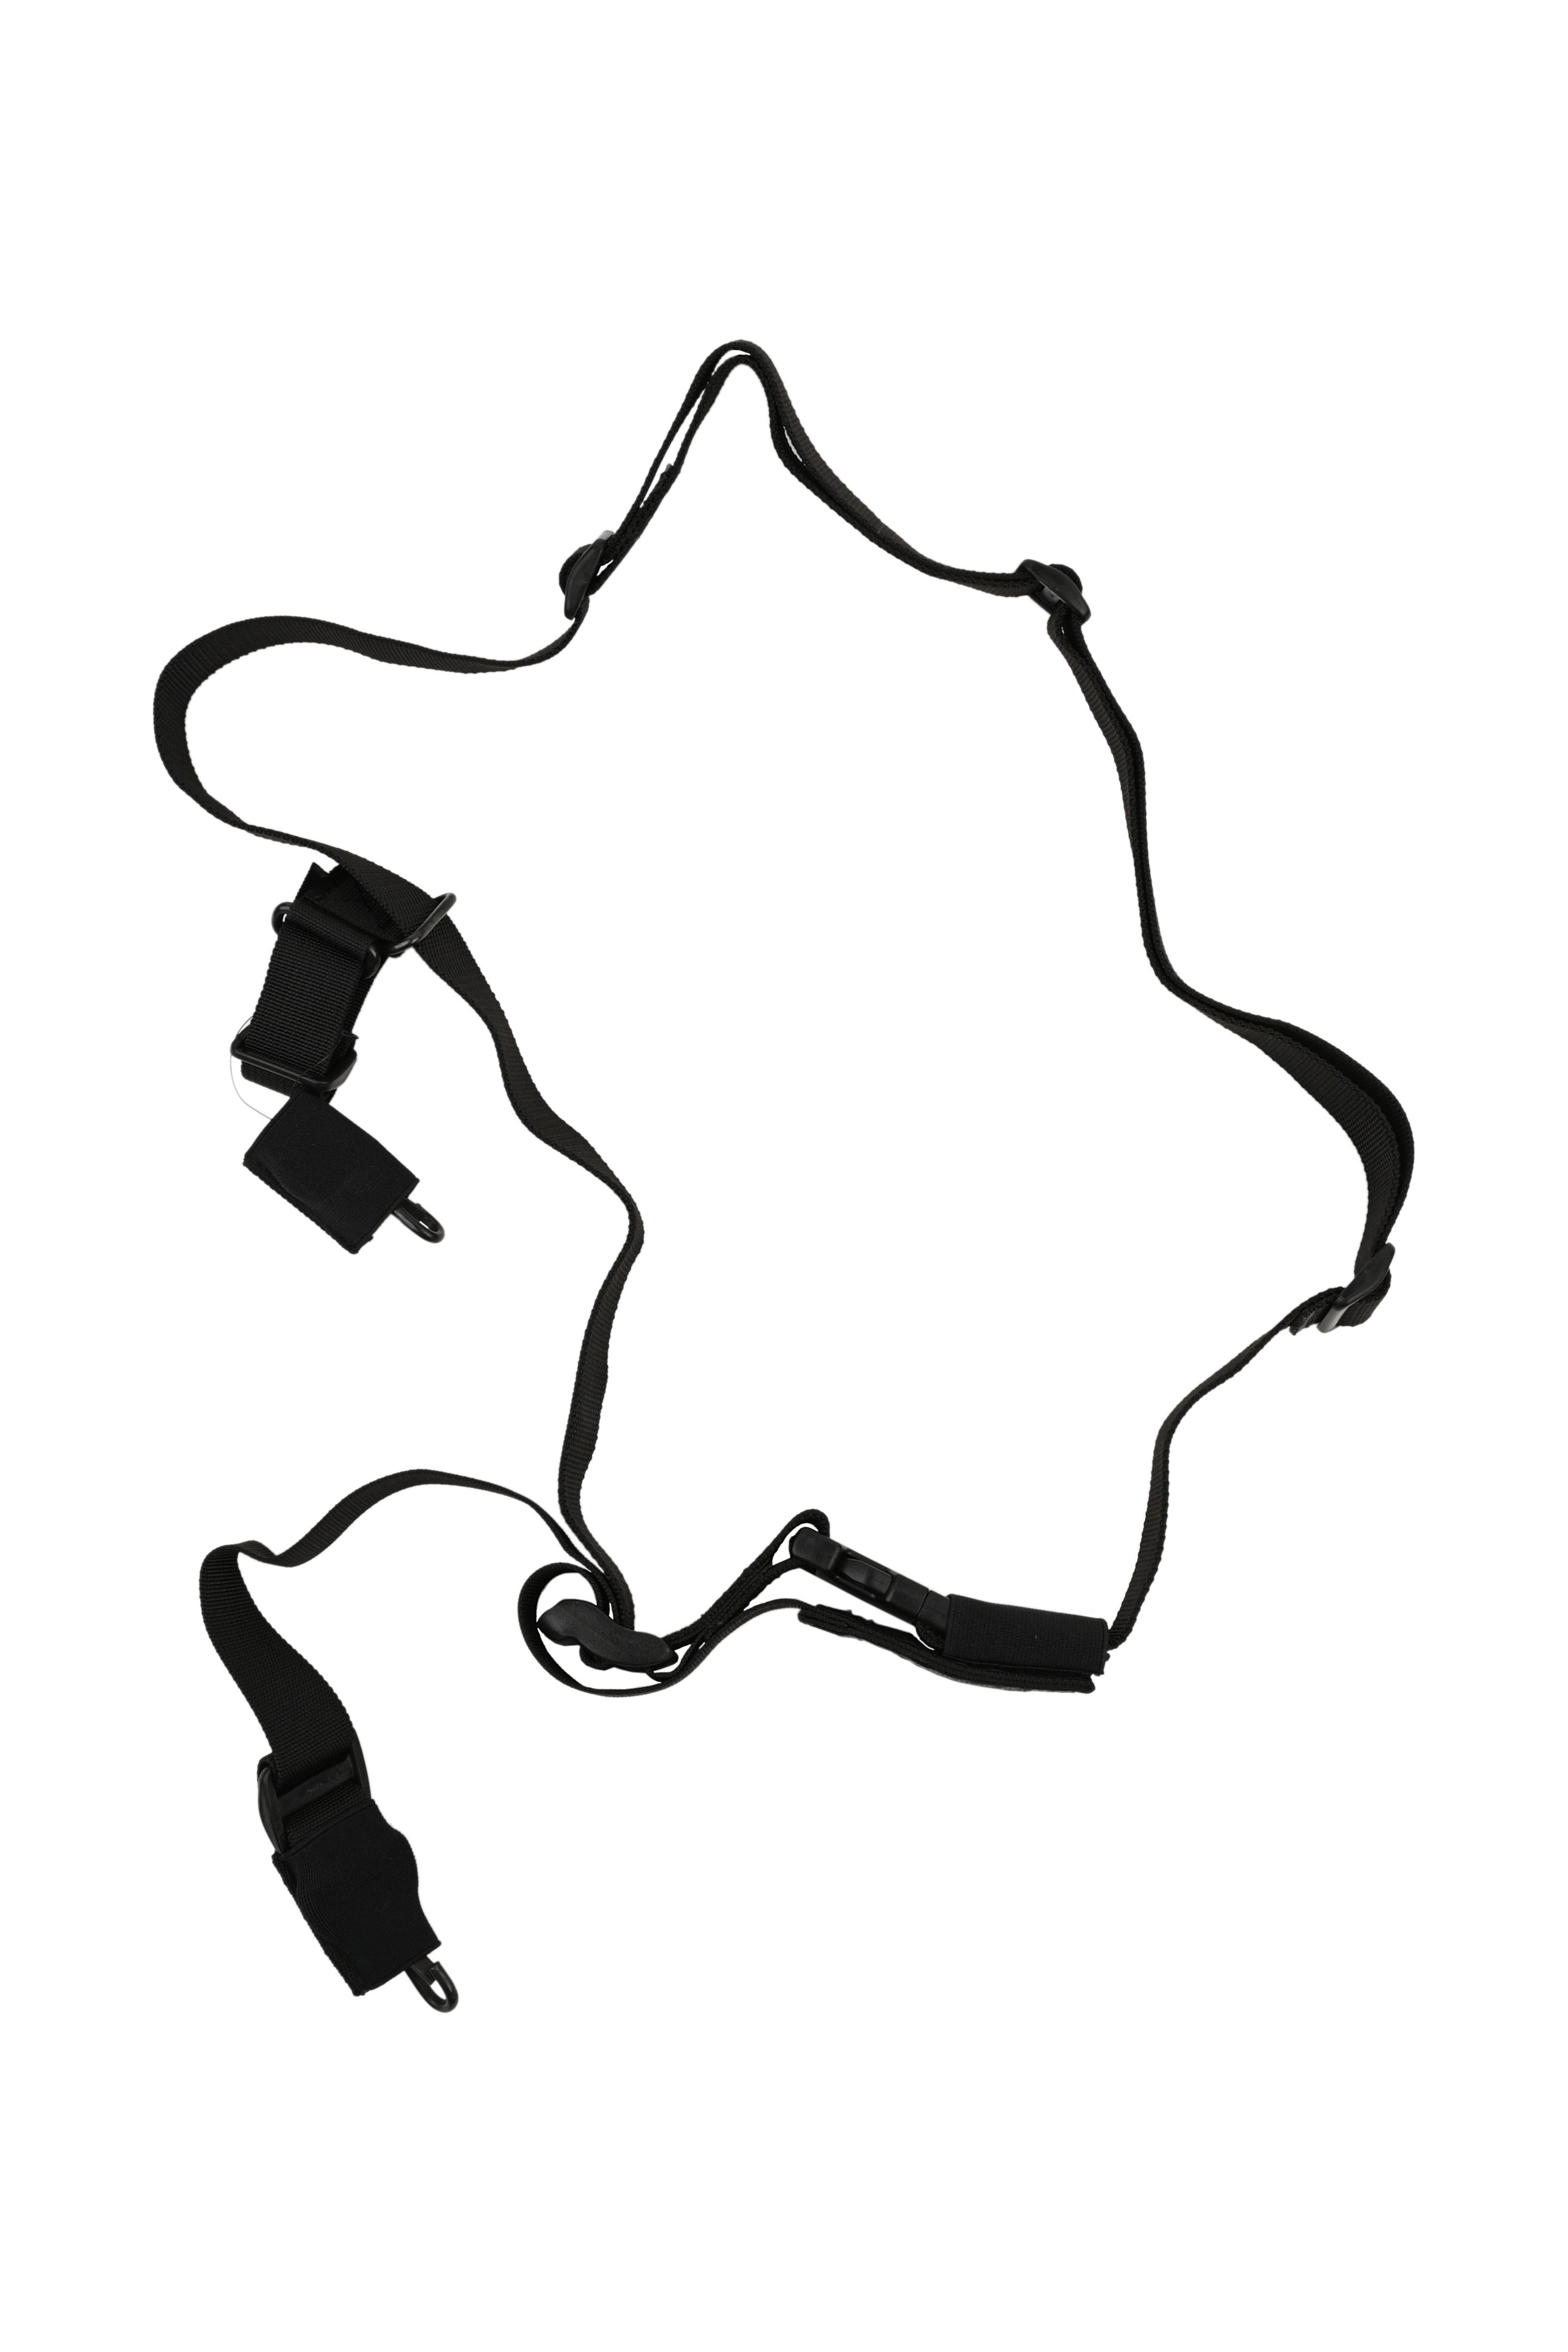 Ремень ТР Долг М2 оружейный тактический черный универсальный - фото 1